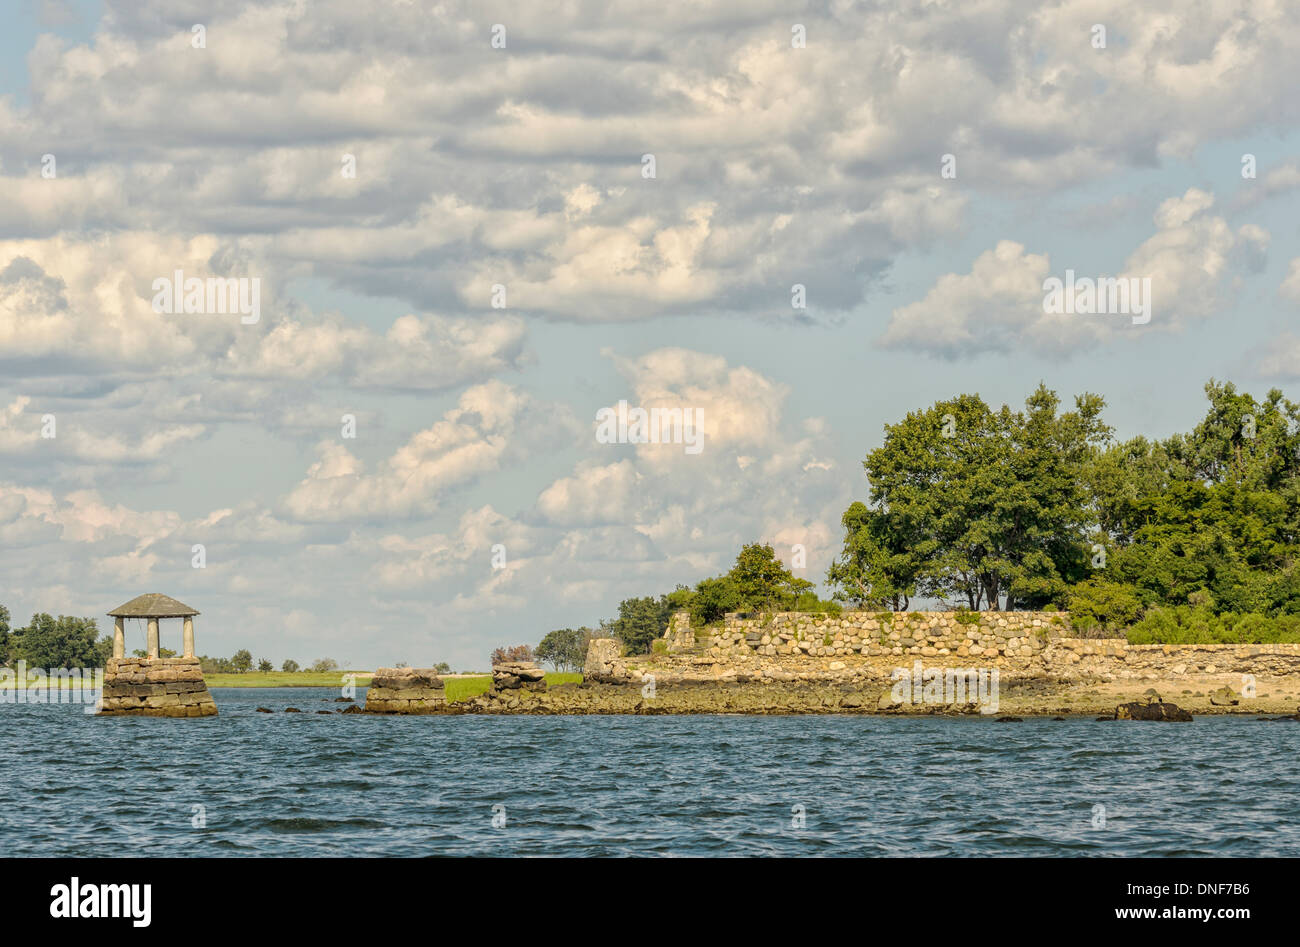 Alte Ruinen von Steinmauern und einem Brunnen auf Sheffield Insel Norwalk Connecticut vom Wasser aus gesehen Meer Cumulus-Wolken Stockfoto